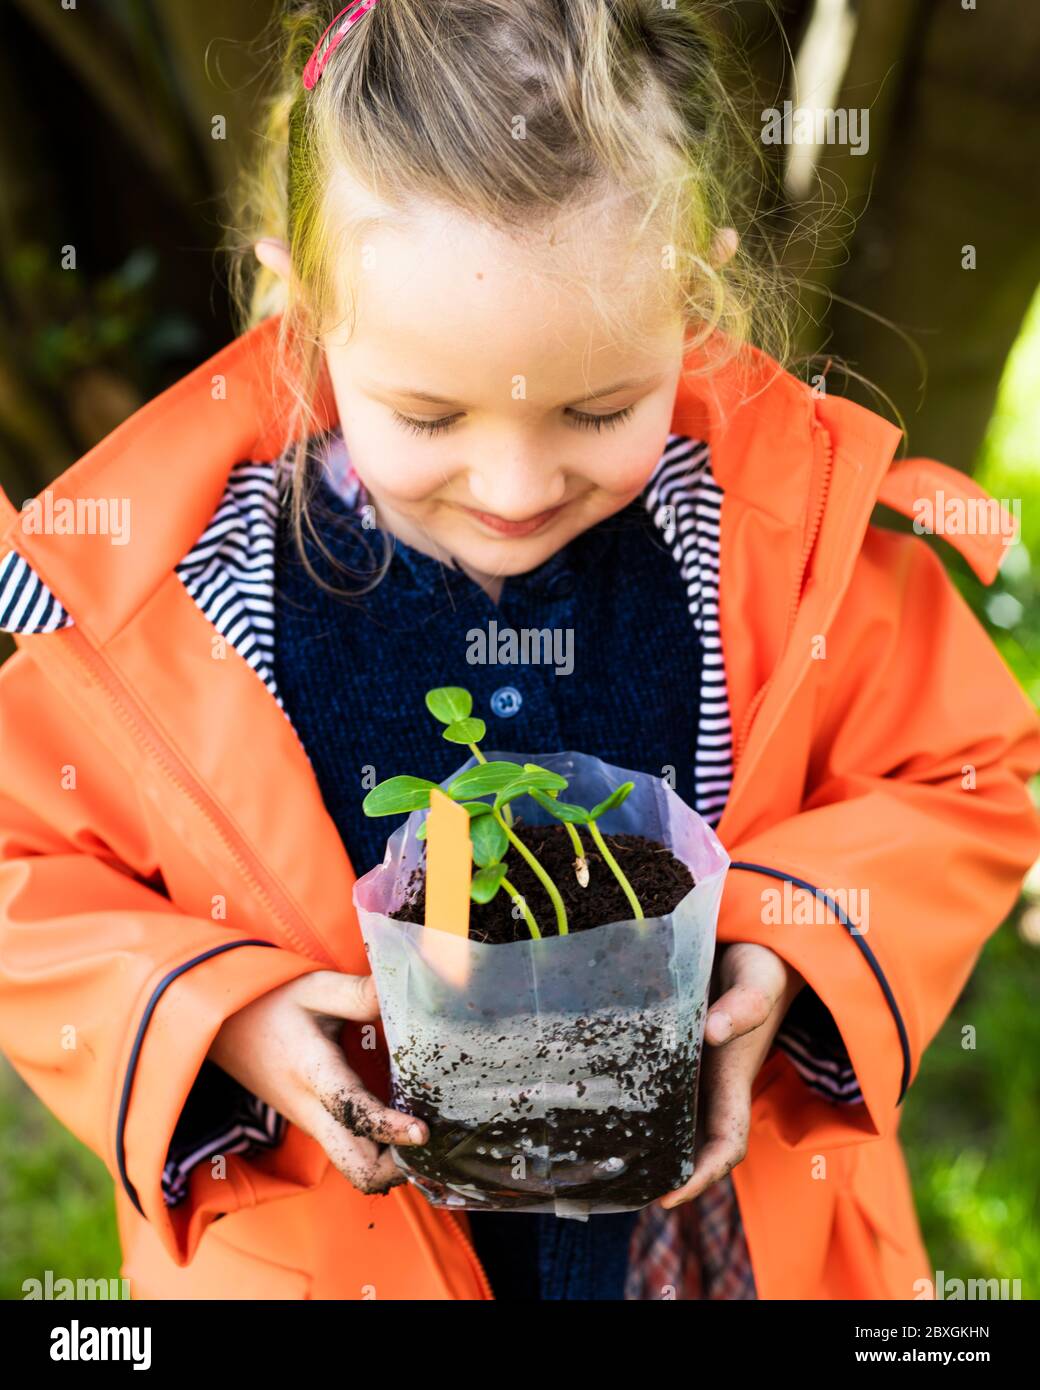 fille de 4 ans planter et jardiner, planter des plantes de concombre, porter un manteau de pluie orange/violet, jour ensoleillé, aide pré-école dans le jardin Banque D'Images